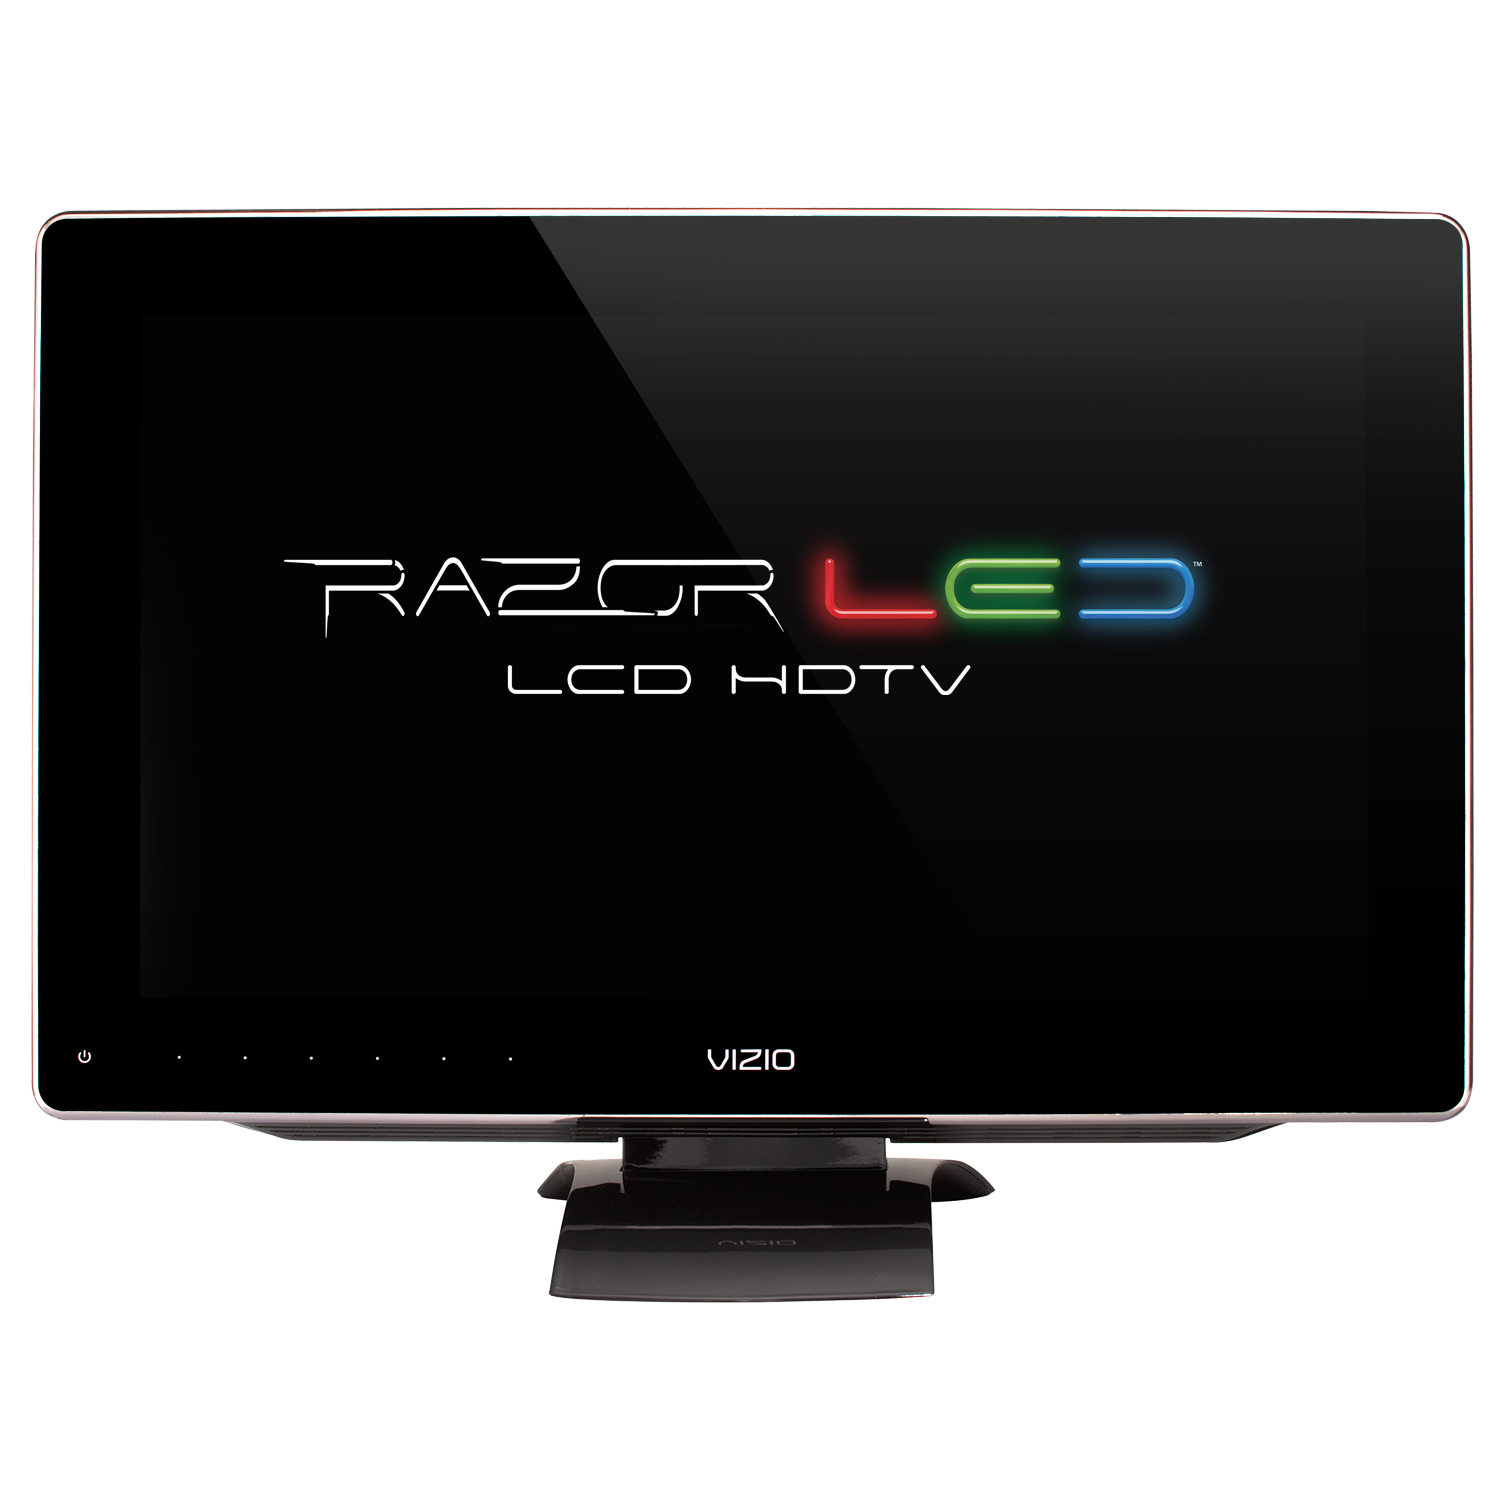 NEW Vizio Razor and TruLED LCD TV’s are HERE! « Dakota PC ...